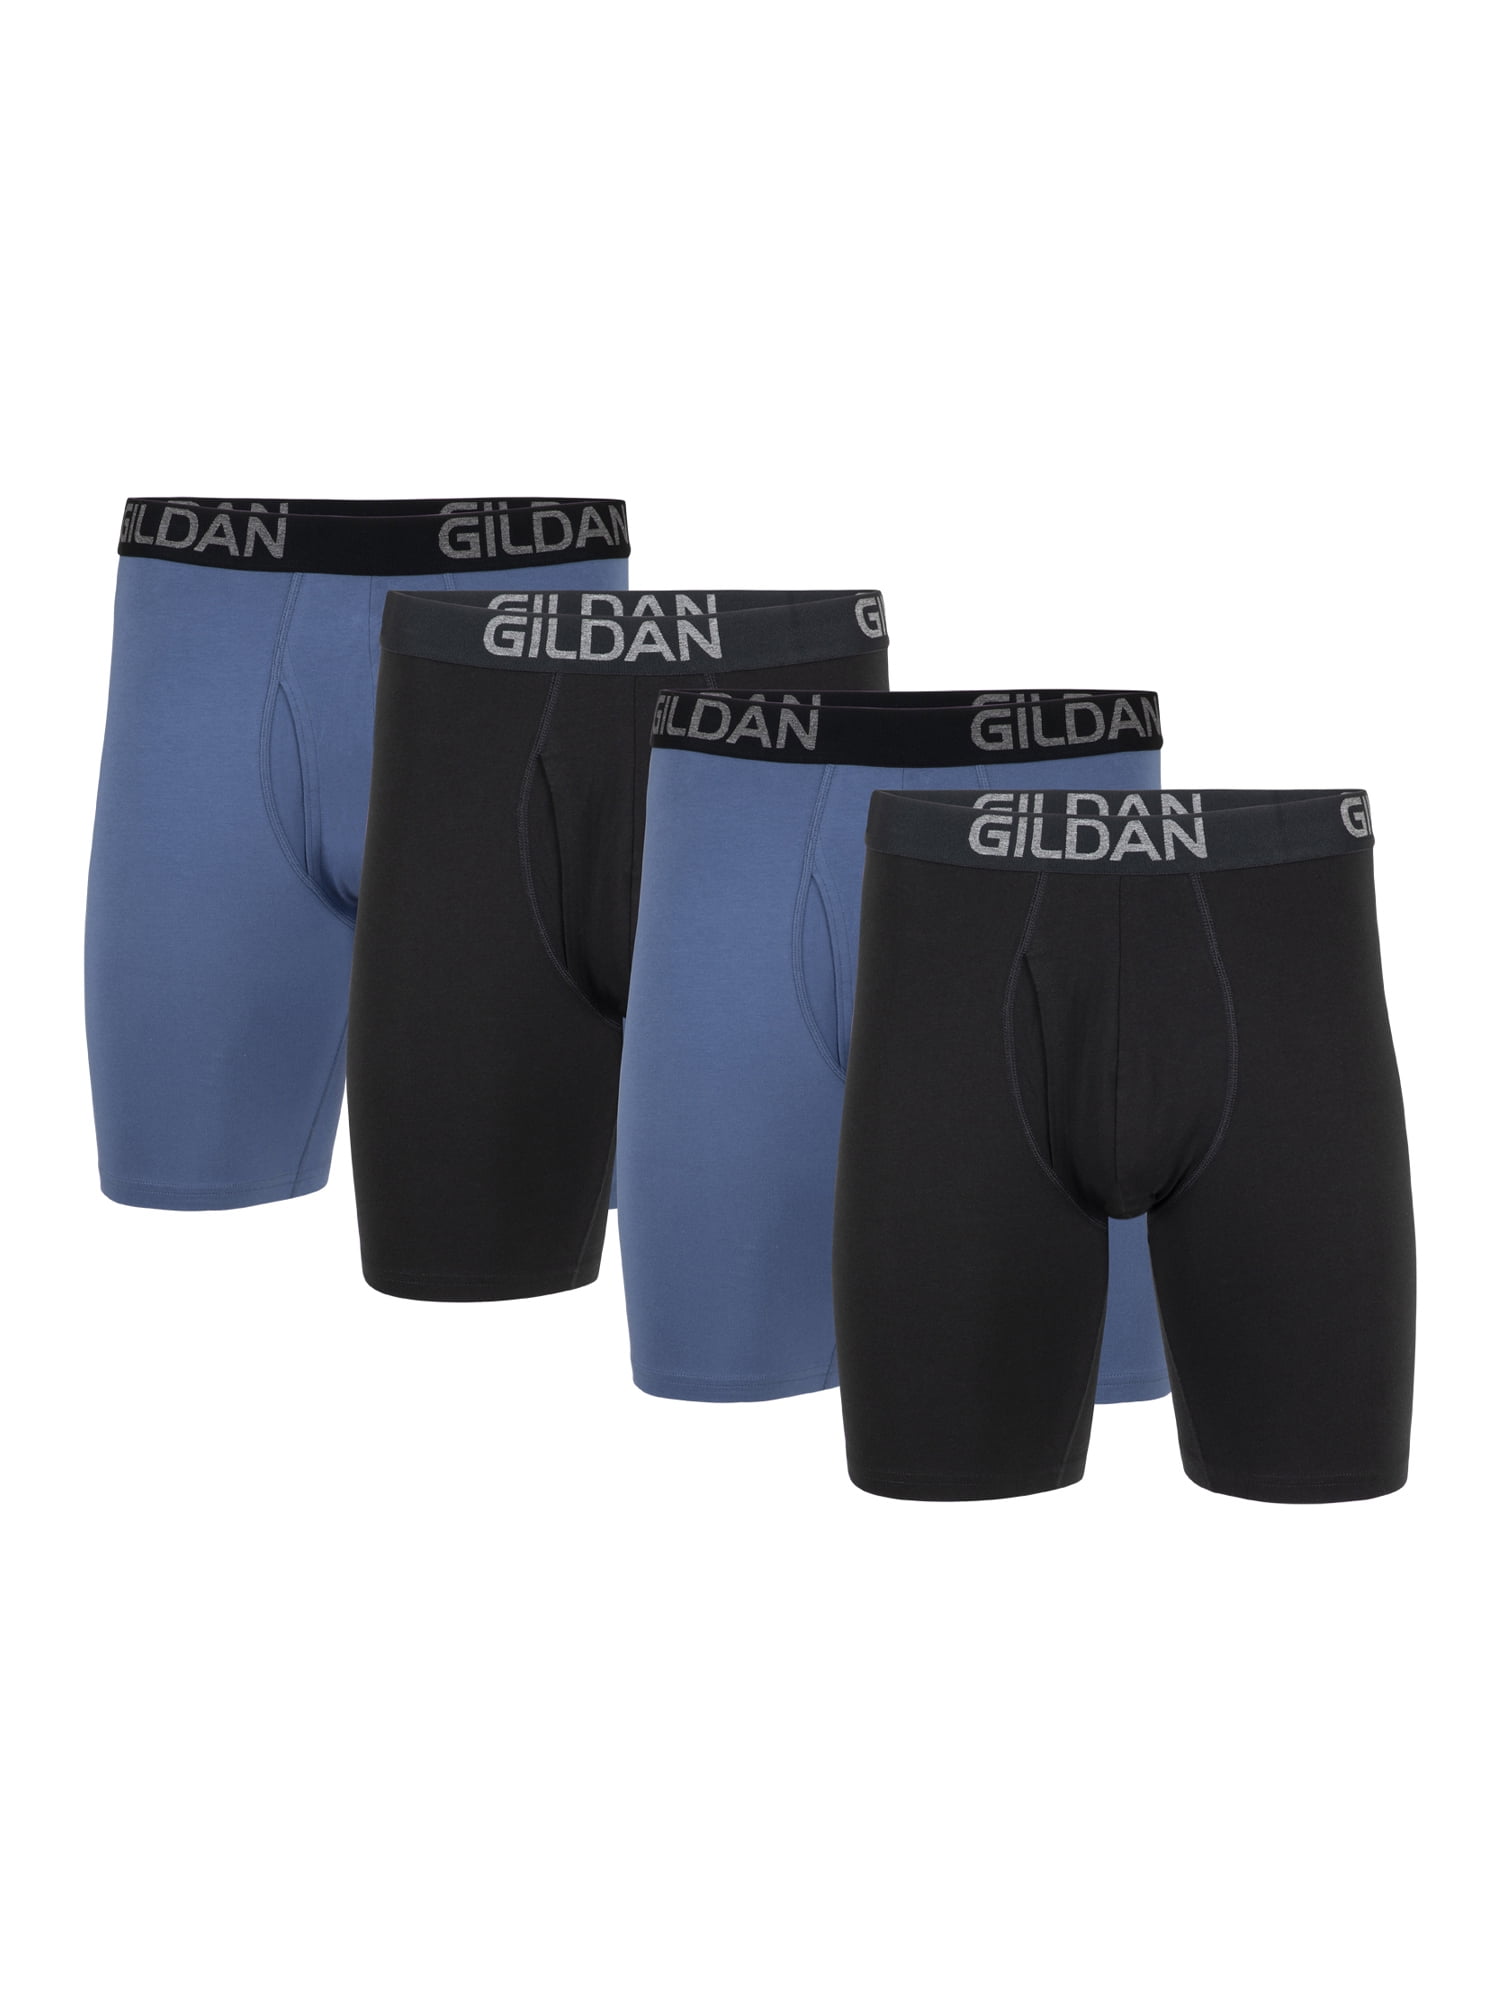 Gildan Men's Cotton Stretch Long Leg Boxer Briefs, 4-Pack, 8.5 Inseam,  Sizes S-2XL